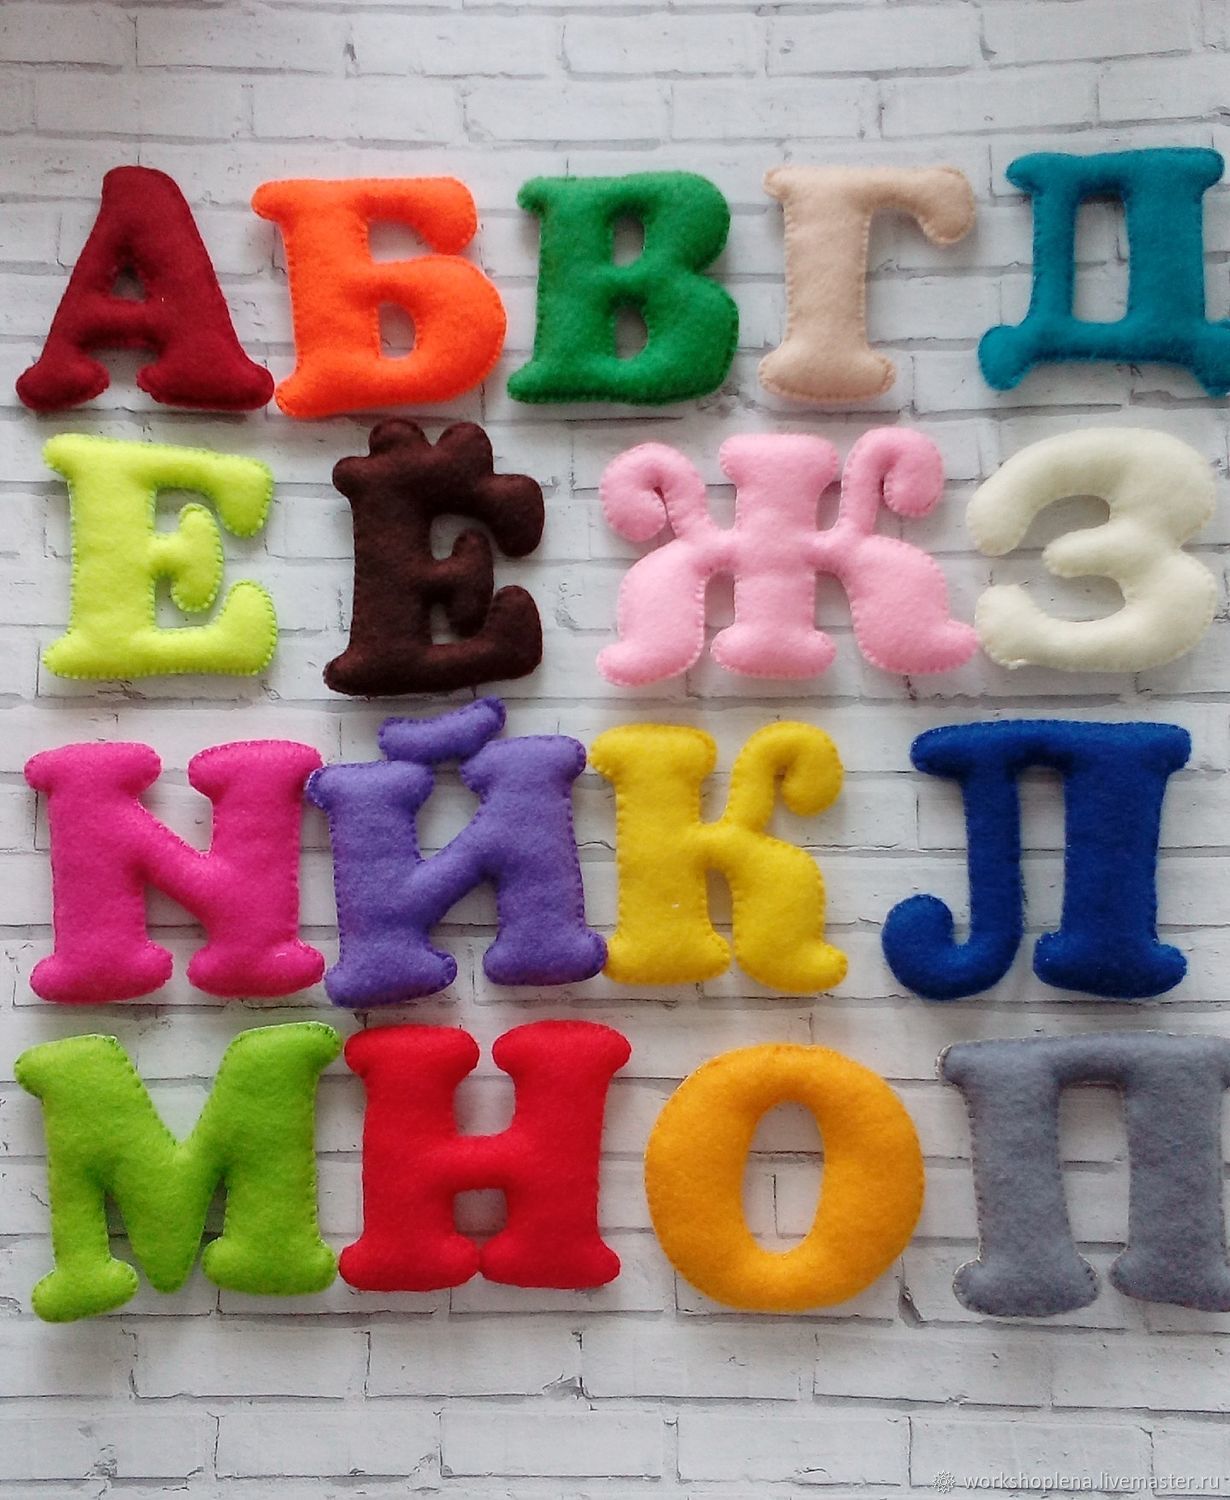 Мягкие игрушки - буквы - купить дешево с дисконтом